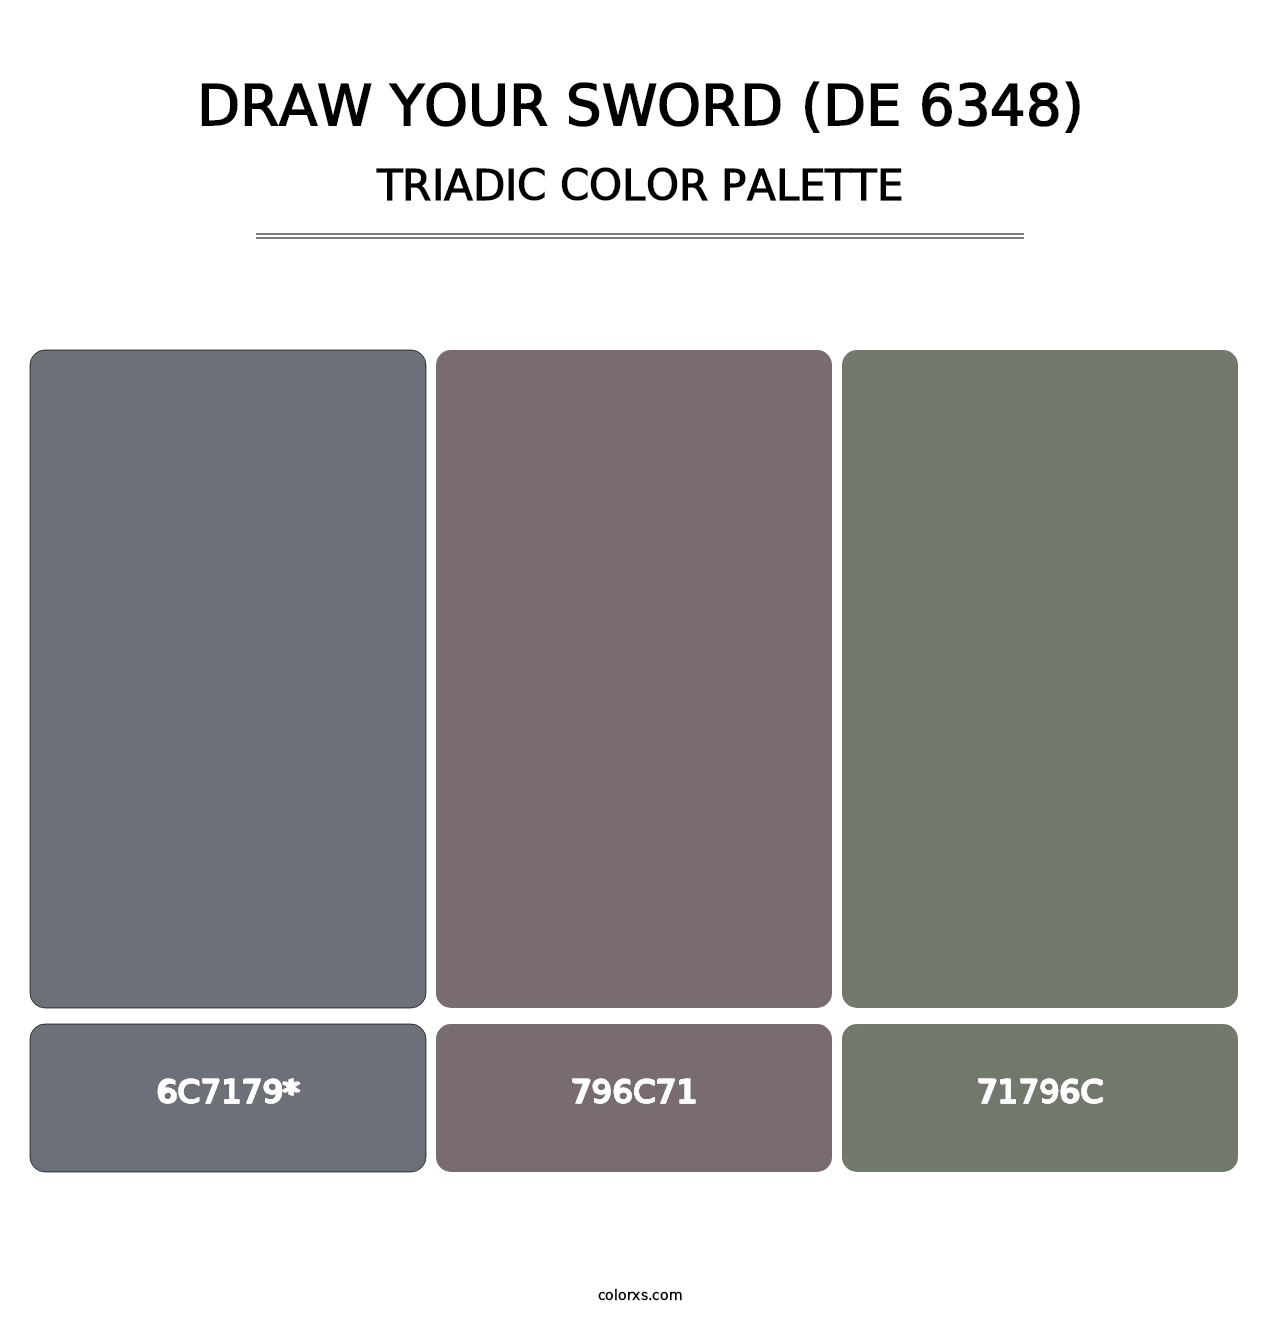 Draw Your Sword (DE 6348) - Triadic Color Palette